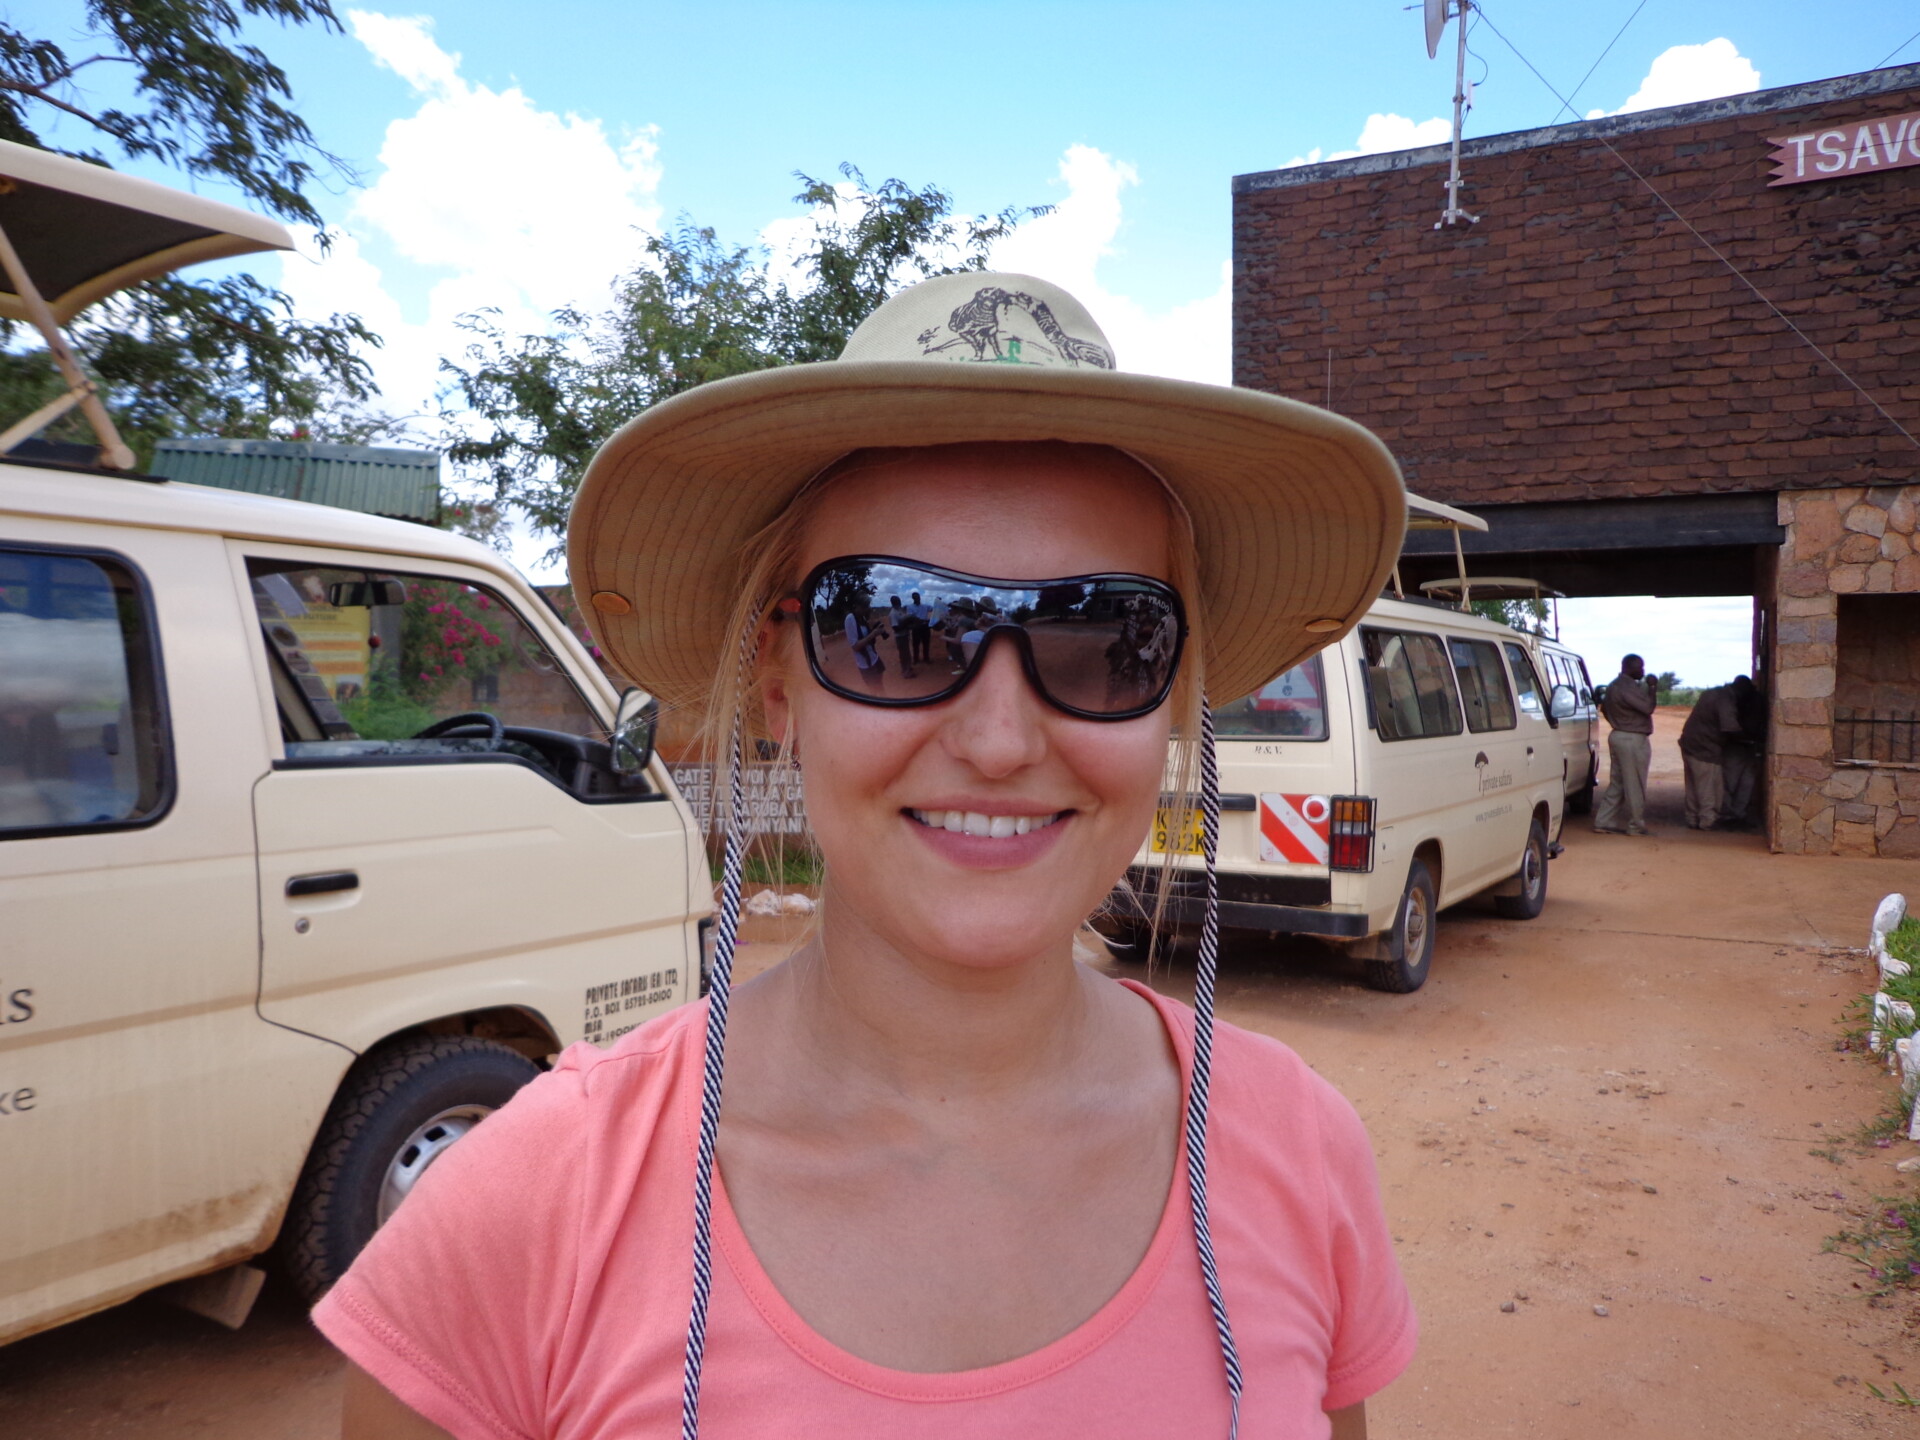 Eine lächelnde Frau mit Sonnenbrille und breitkrempigem Hut steht vor einem Hintergrund mit Safarifahrzeugen und einem Gebäude mit der Aufschrift "TSAVO". Sie scheint sich auf ein Abenteuer in einem Naturreservat oder einer ähnlichen Umgebung vorzubereiten.